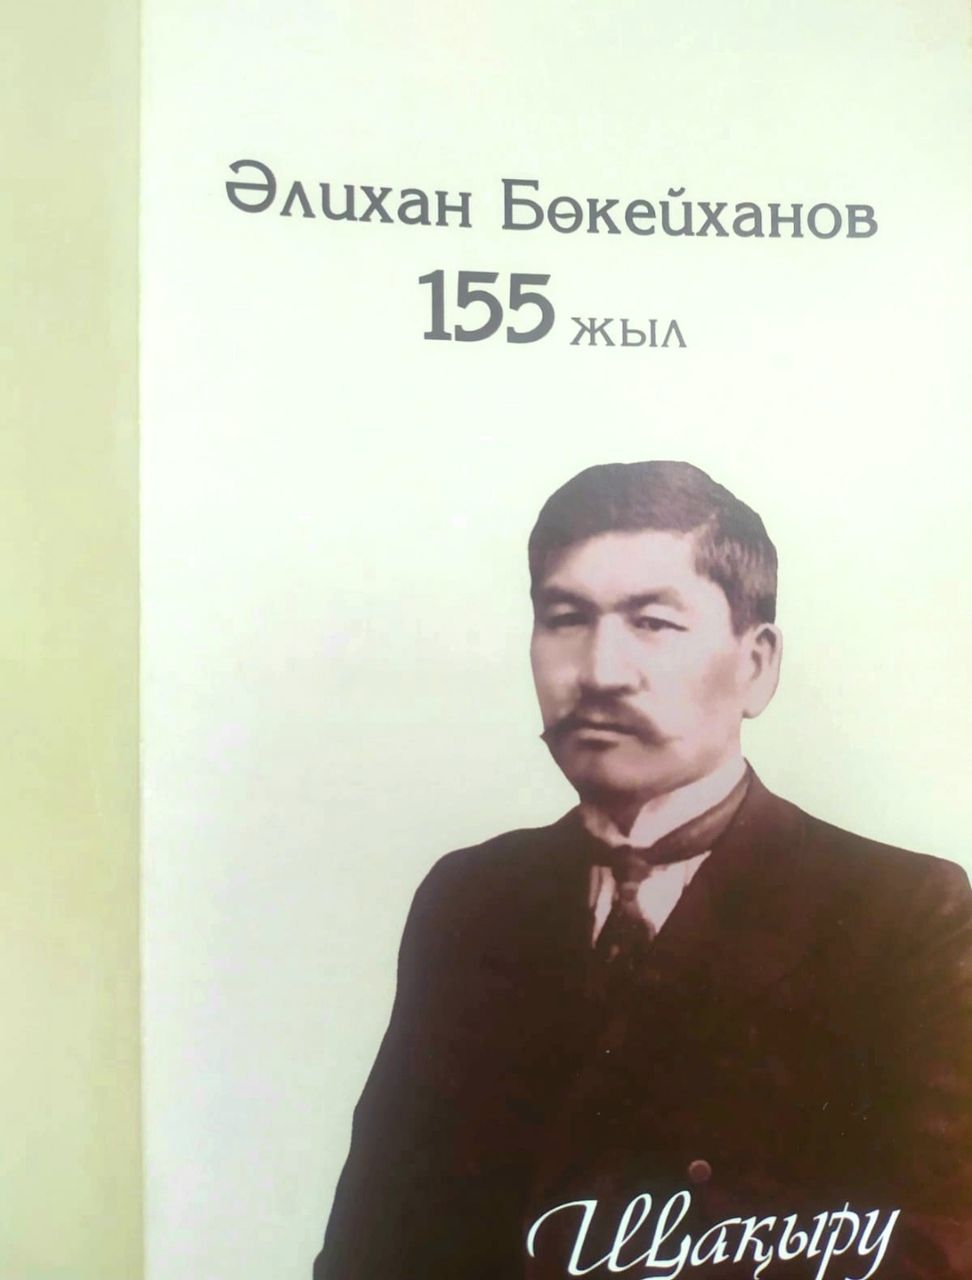 Алматы қаласында Әлихан Бөкейхановтың 155-жылдығын еске алуға арналған салтанатты кеш өтті